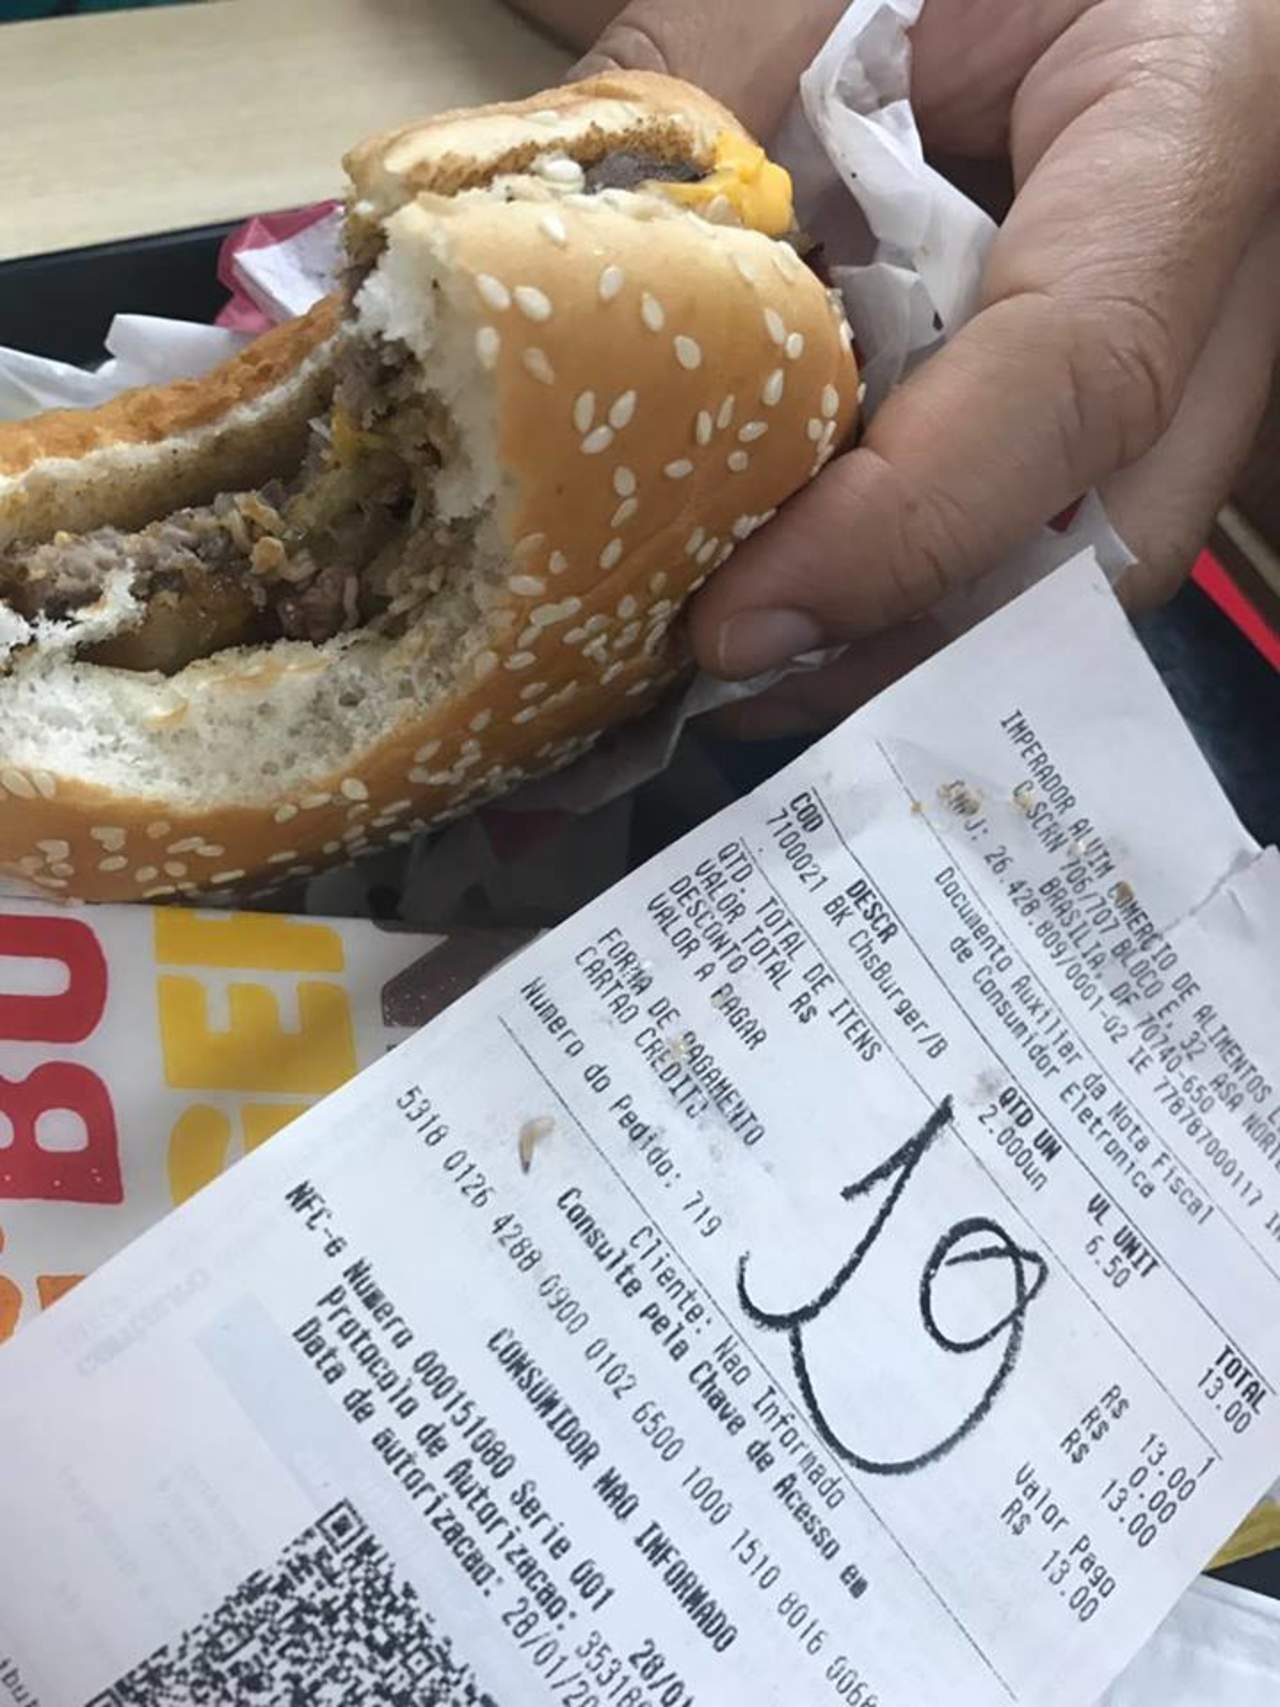 Graban gusanos dentro de una hamburguesa